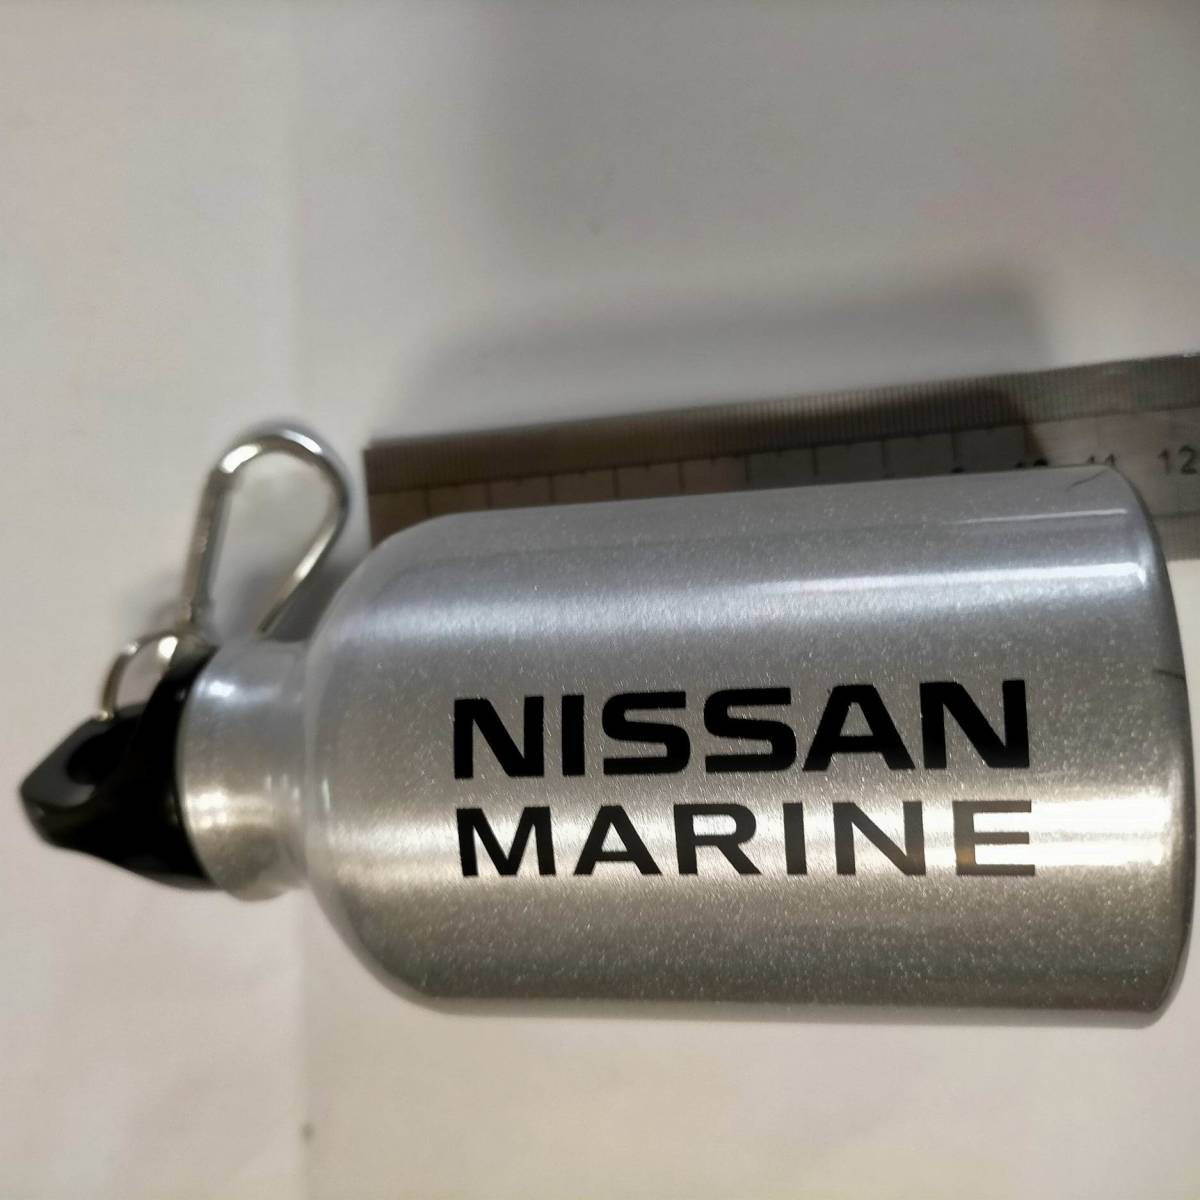 非売品 日産マリーン 水筒 ボトル NISSAN MARINE Water bottle campaign item